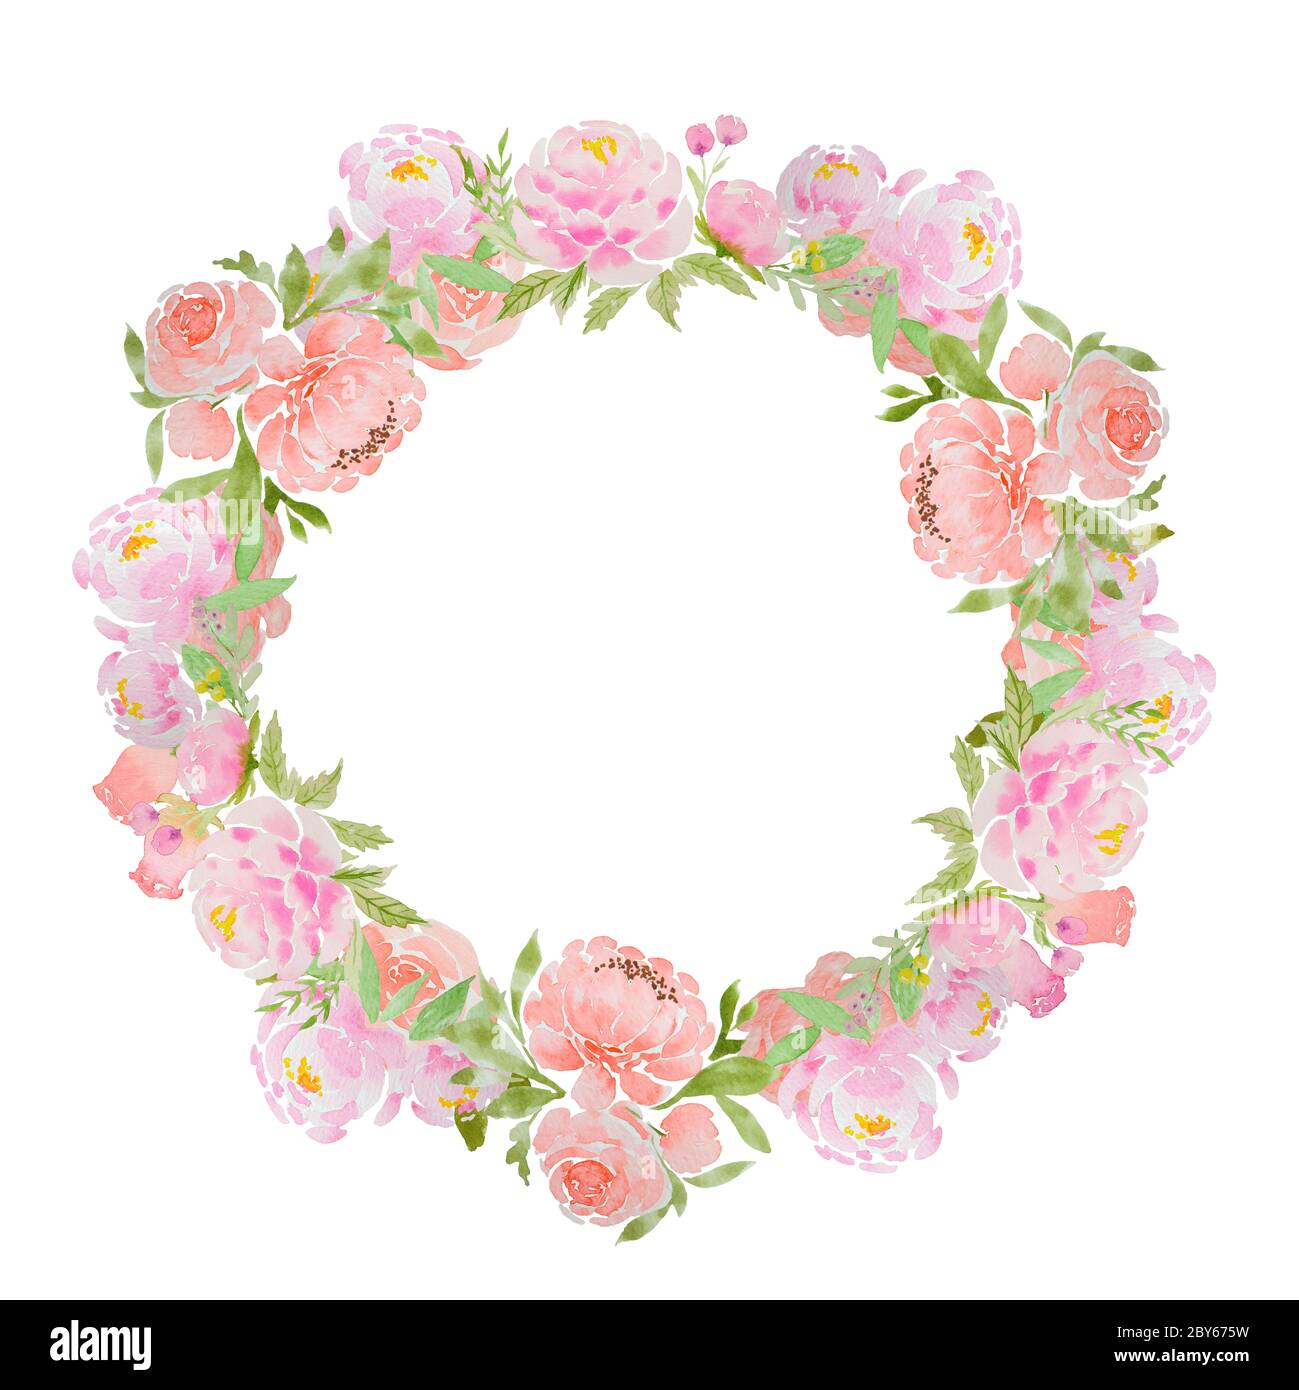 Belle couronne d'aquarelle de pivoines et de roses roses. Cadre rond fleuri pour cartes, invitations, motifs. Banque D'Images